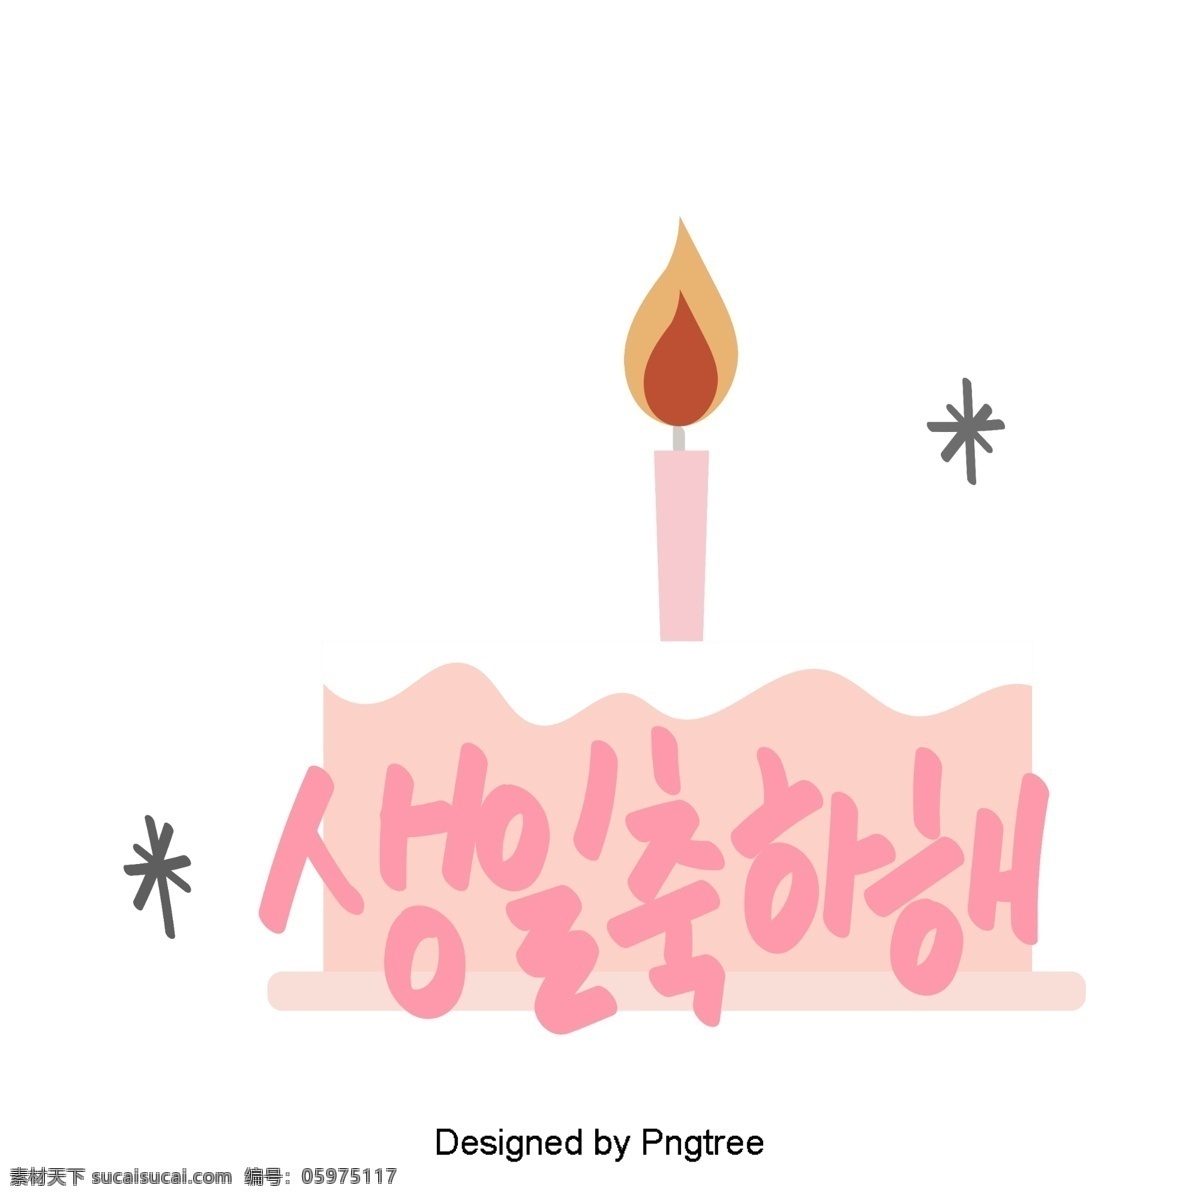 生日 快乐 美丽 韩国 日常用语 简单 手 材料 字体 语风 每日词汇量 可爱 字形 粉 移动支付 祝你生日快乐 蛋糕 生日快乐